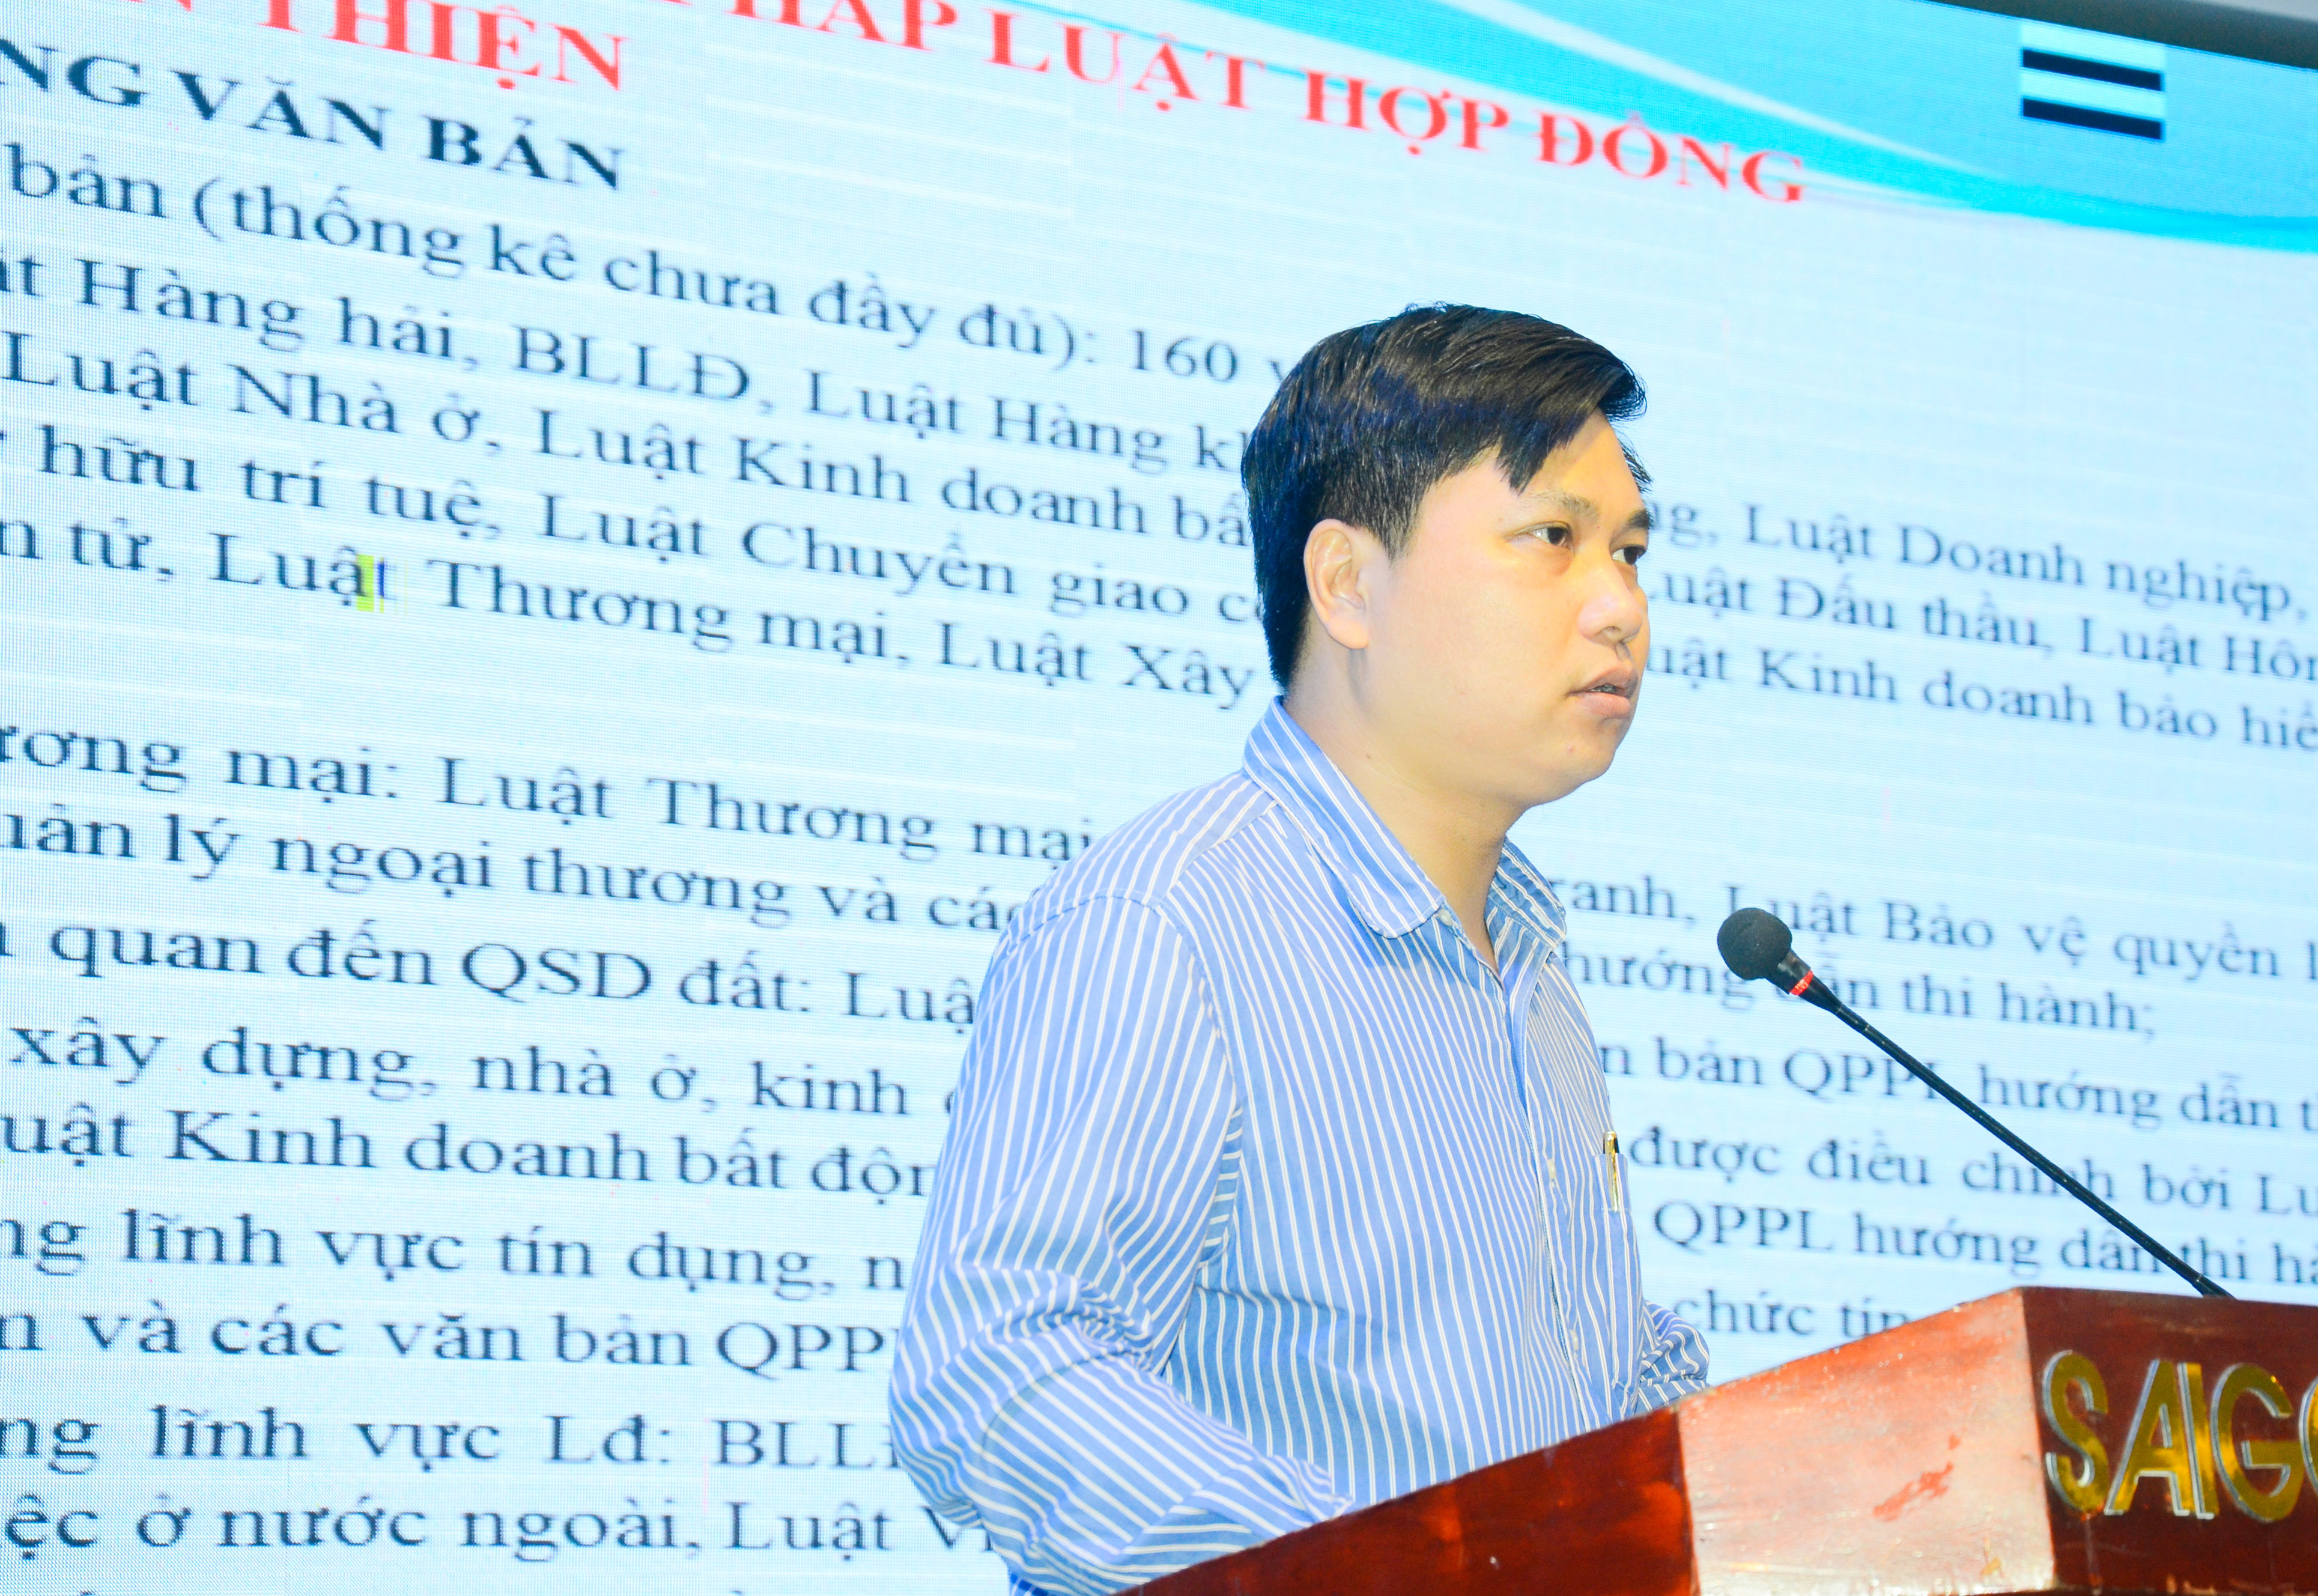 Luật gia Trần Minh Sơn truyền đạt chuyên đề tại hội nghị. Ảnh: Lê Thanh